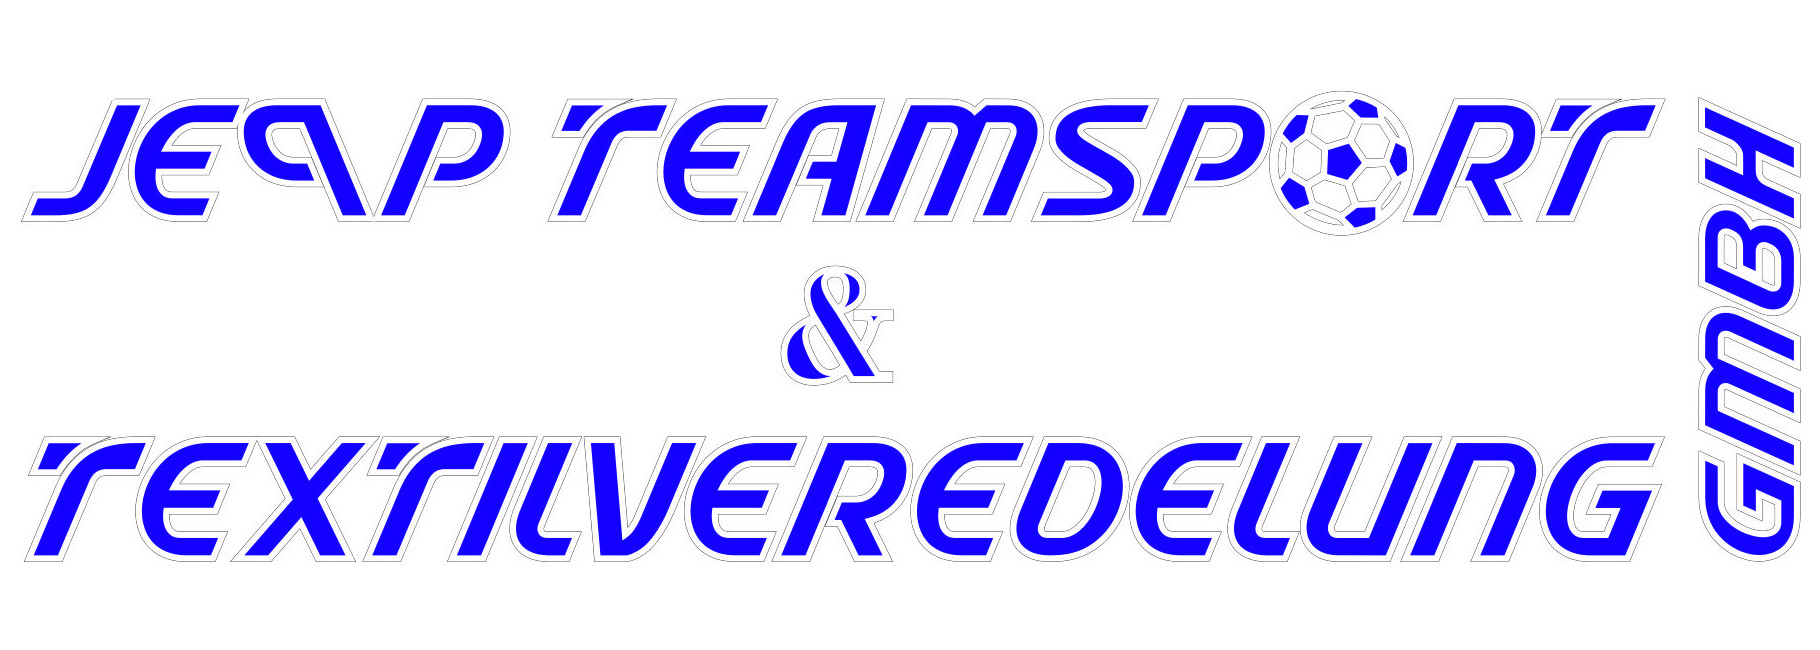 Logo JEPP Teamsport